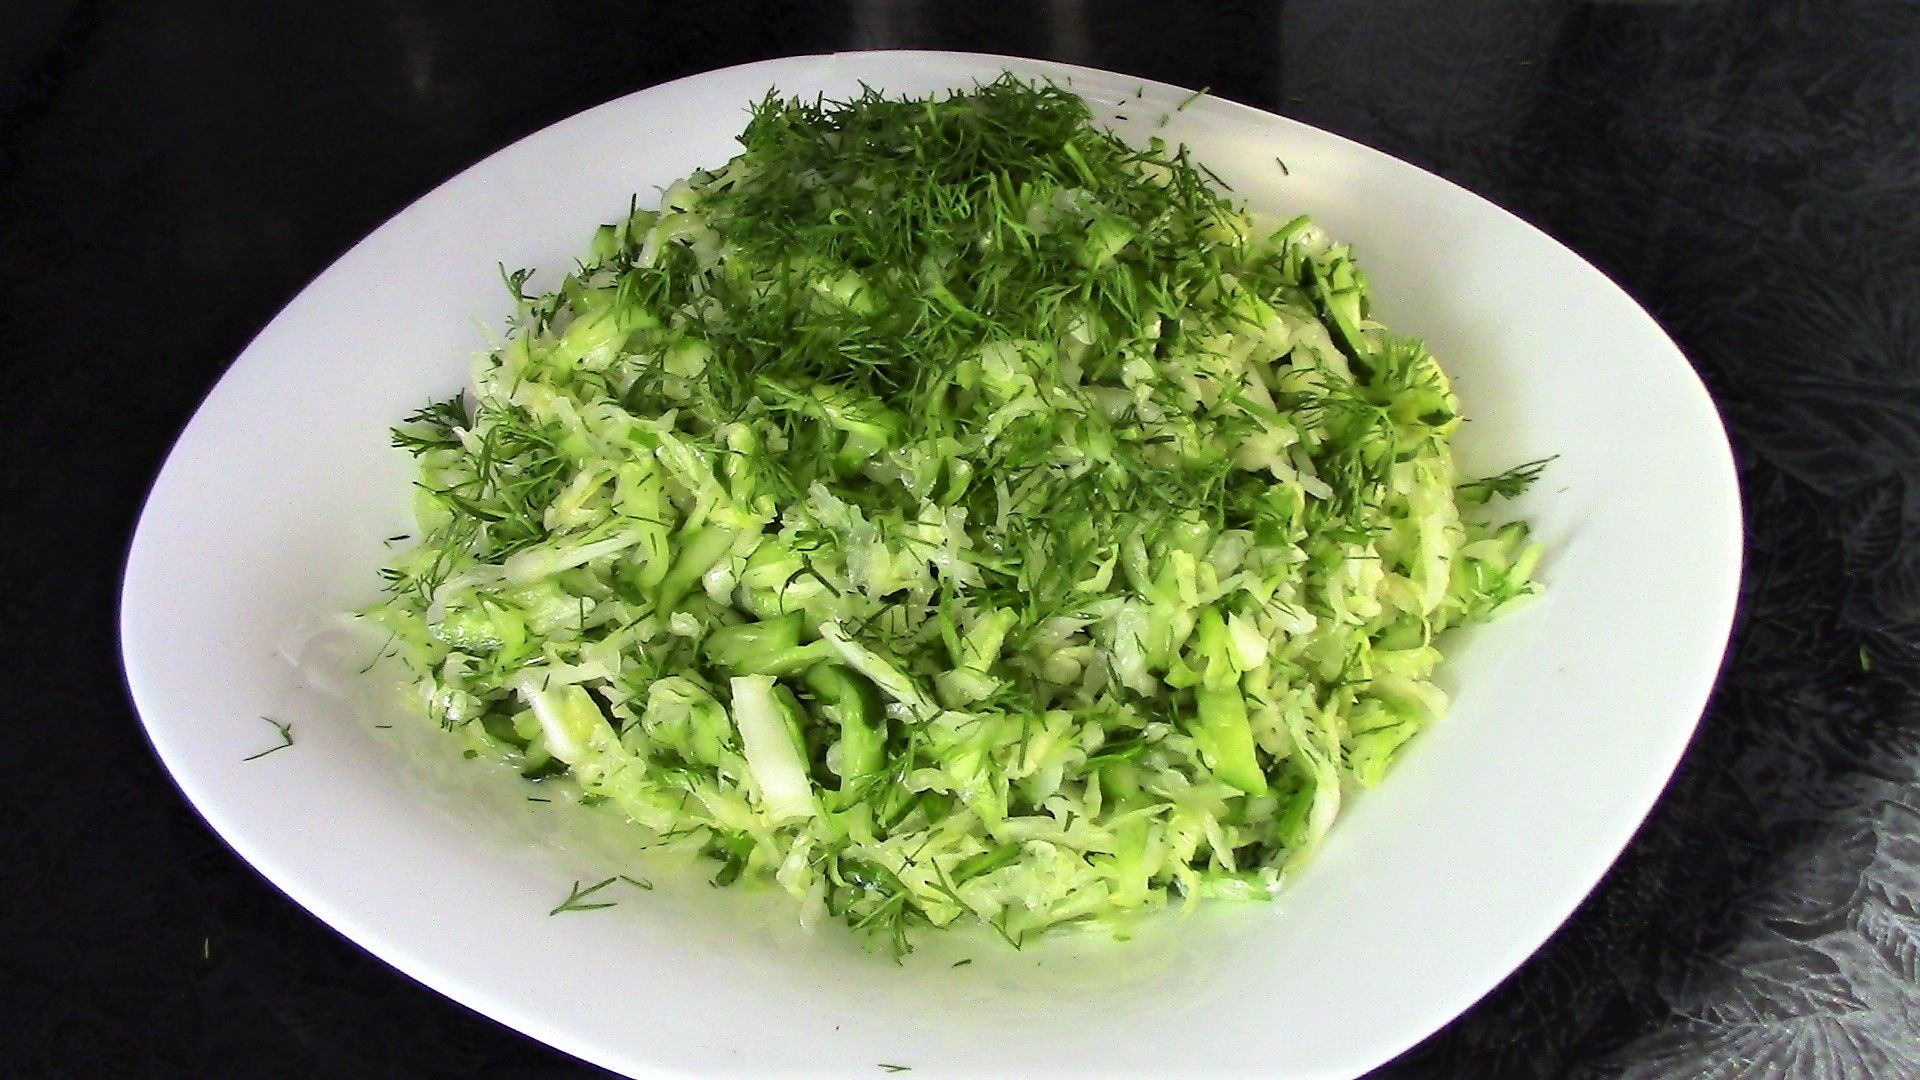 Смешиваем капусту и огурцы, но салат воспринимают как новый. Хитрость в заправке из сметаны с горчицей